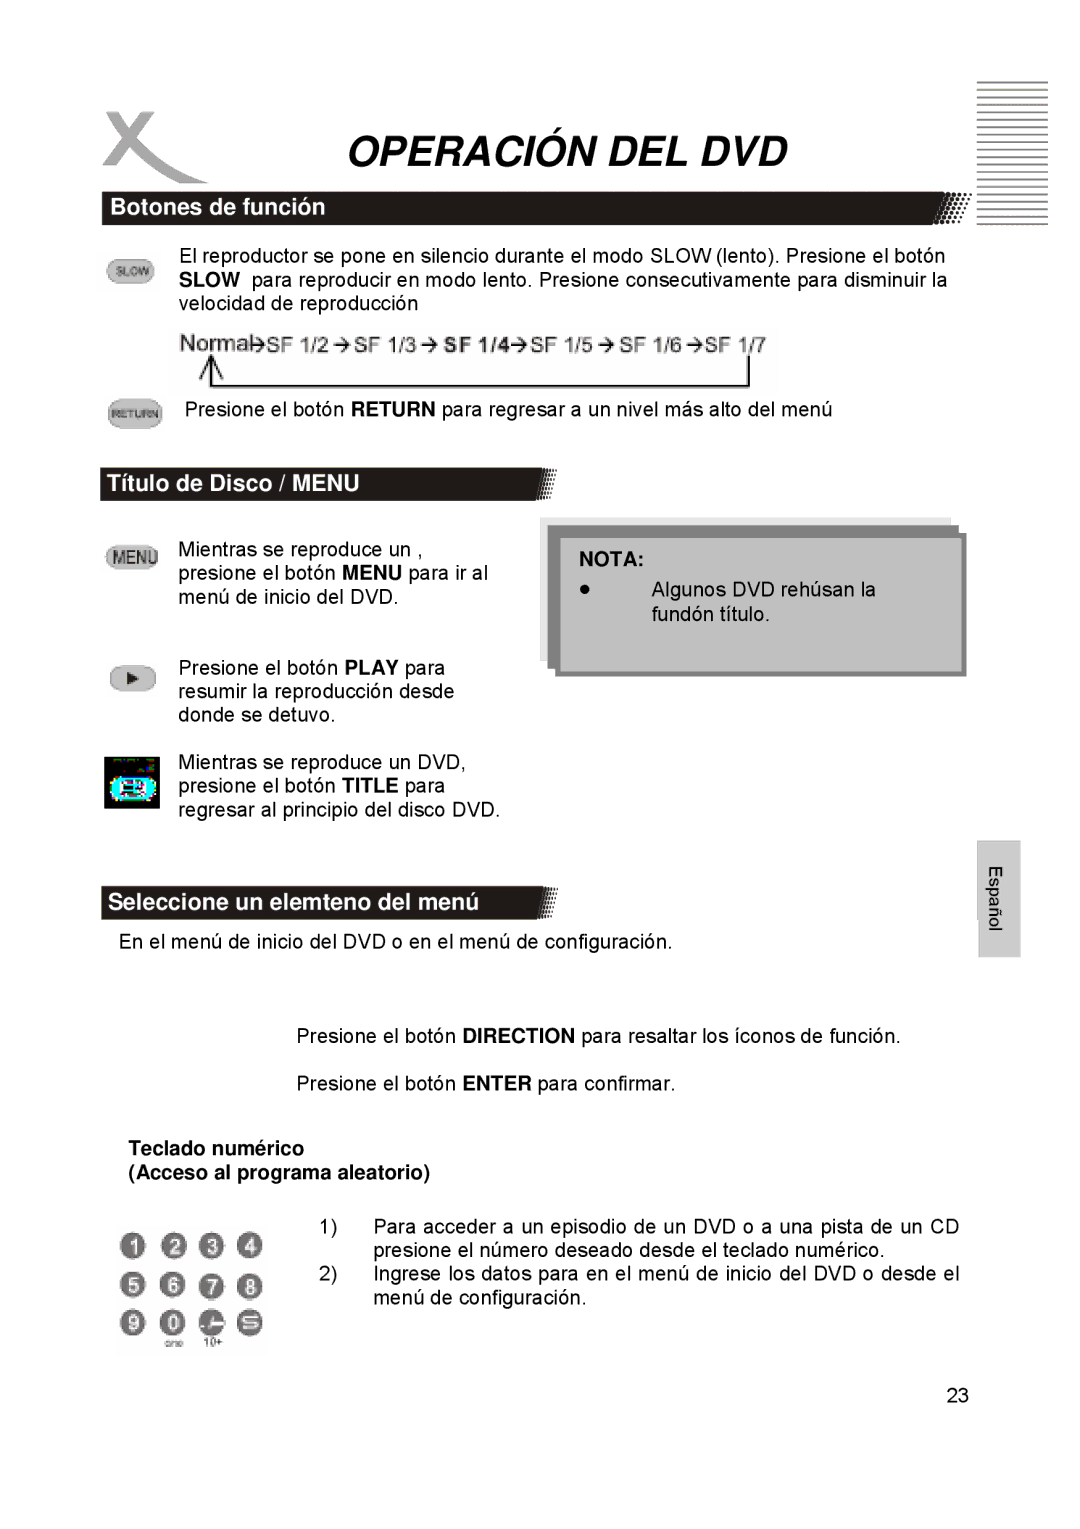 Xoro HTC1900D manual Título de Disco / Menu, Seleccione un elemteno del menú, Teclado numérico Acceso al programa aleatorio 